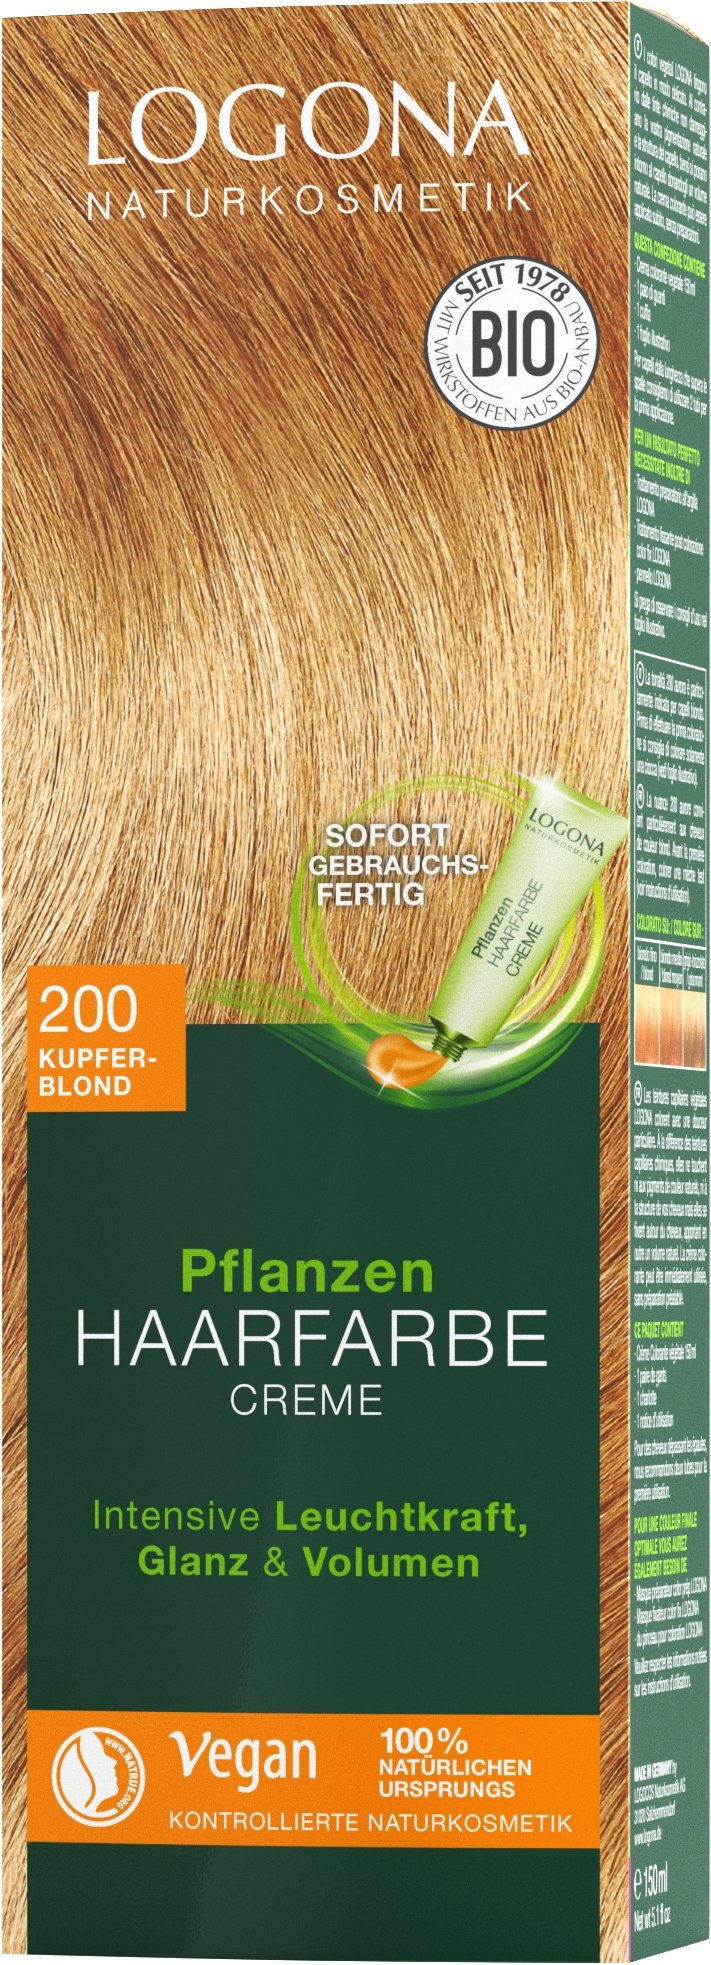 Pflanzen-Haarfarbe Creme 200 Kupferblond | Haarfarben | Logona